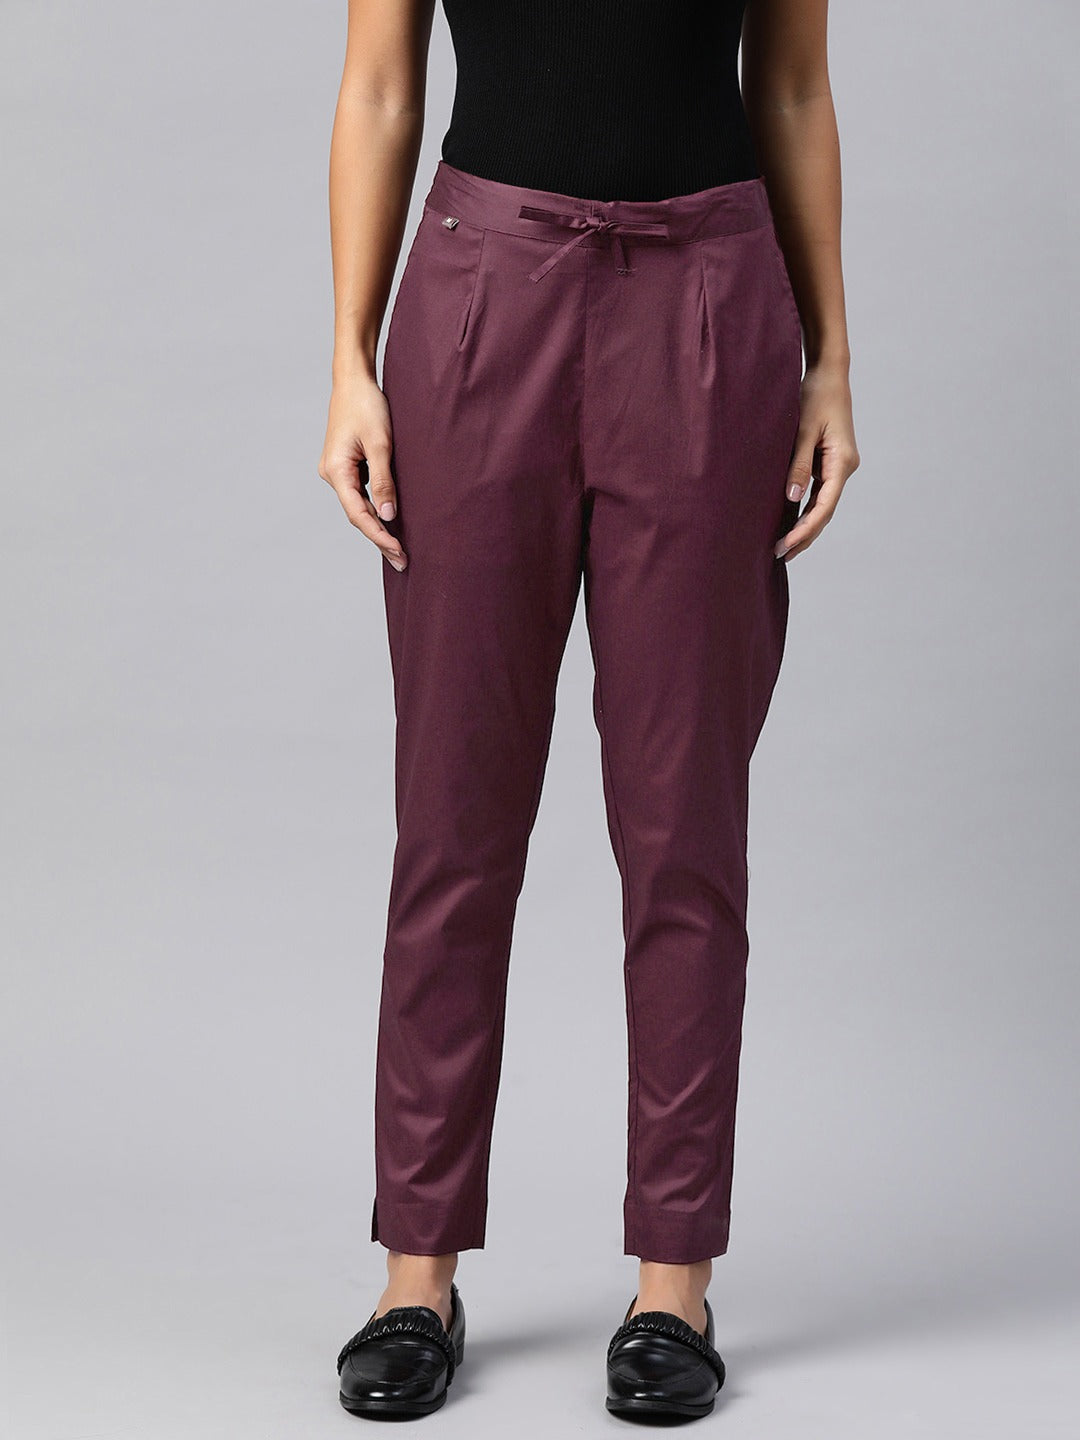 Cotton Lycra Fabric Burgundy Color Trouser